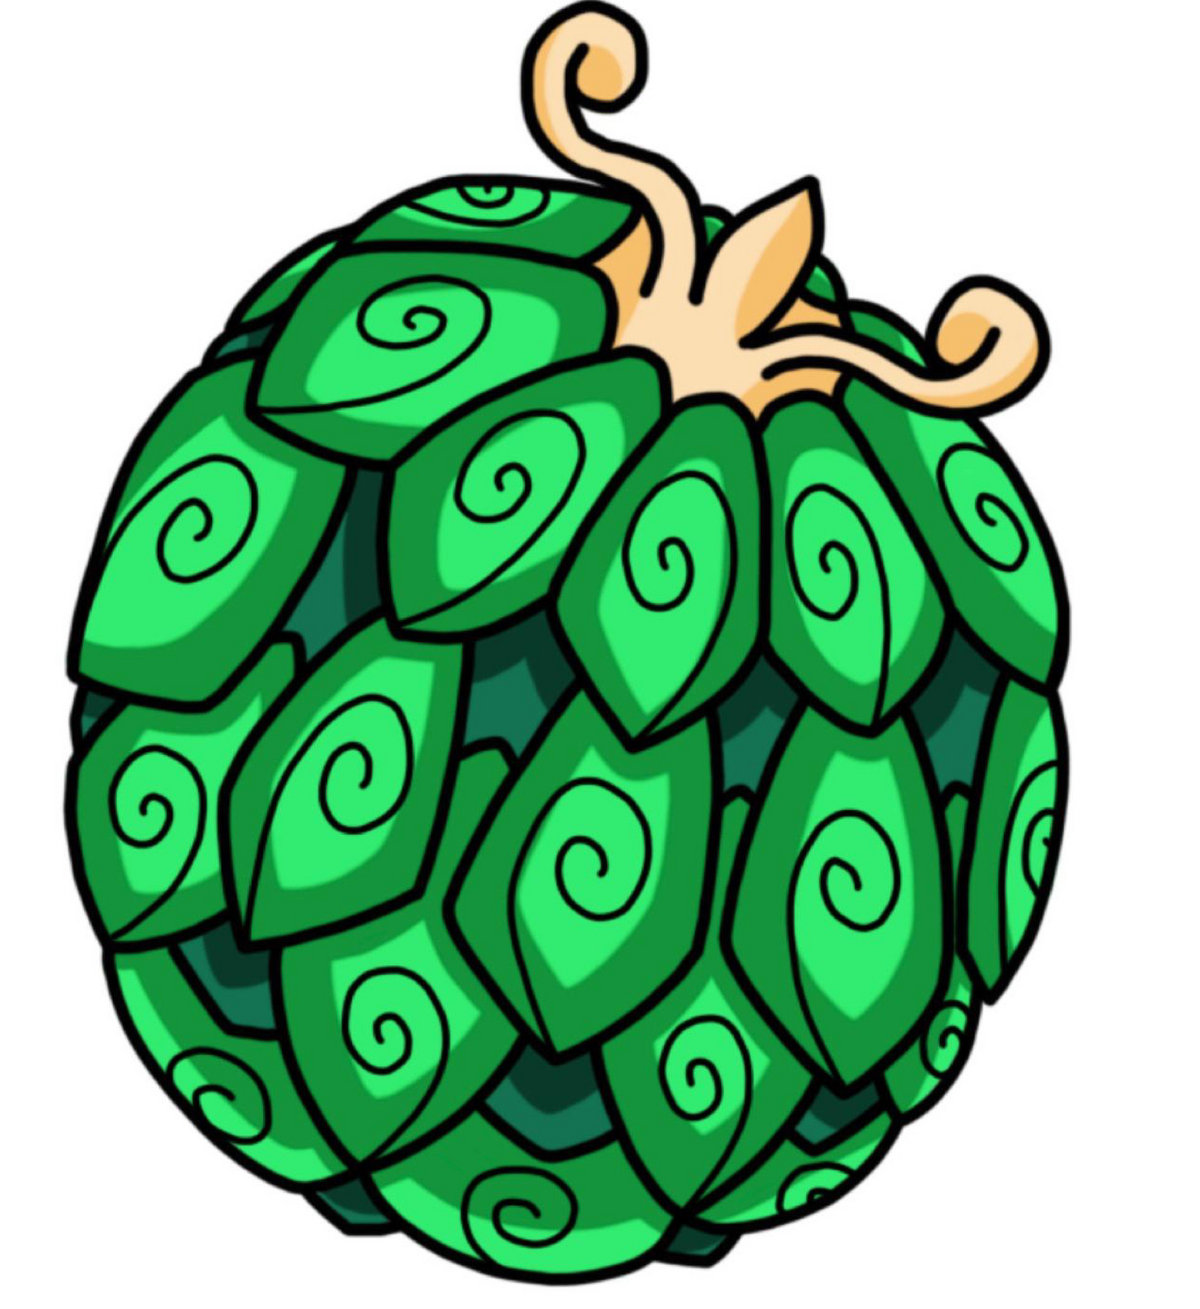 Door Fruit, Project: One Piece Wiki